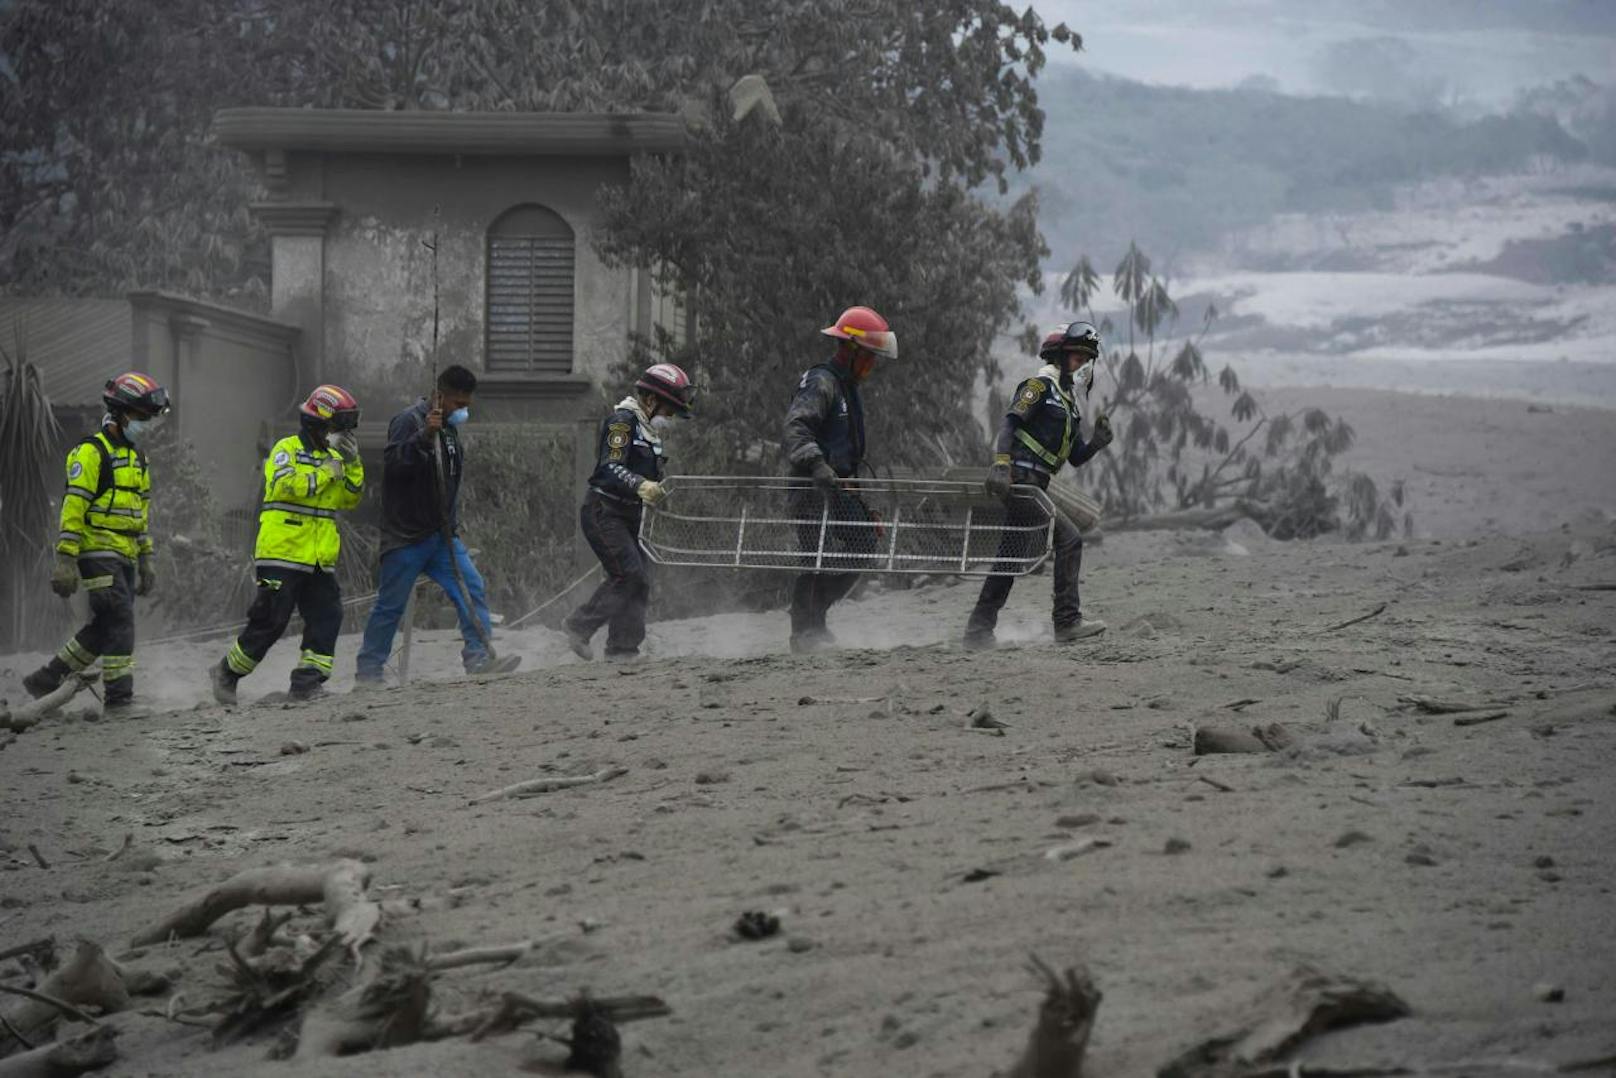 Der Ausbruch des Volcán de Fuego ("Feuervulkan") im zentralamerikanischen Guatemala hat seit Sonntag, dem 3. Juni 2018, schon Dutzende Menschenleben gefordert.